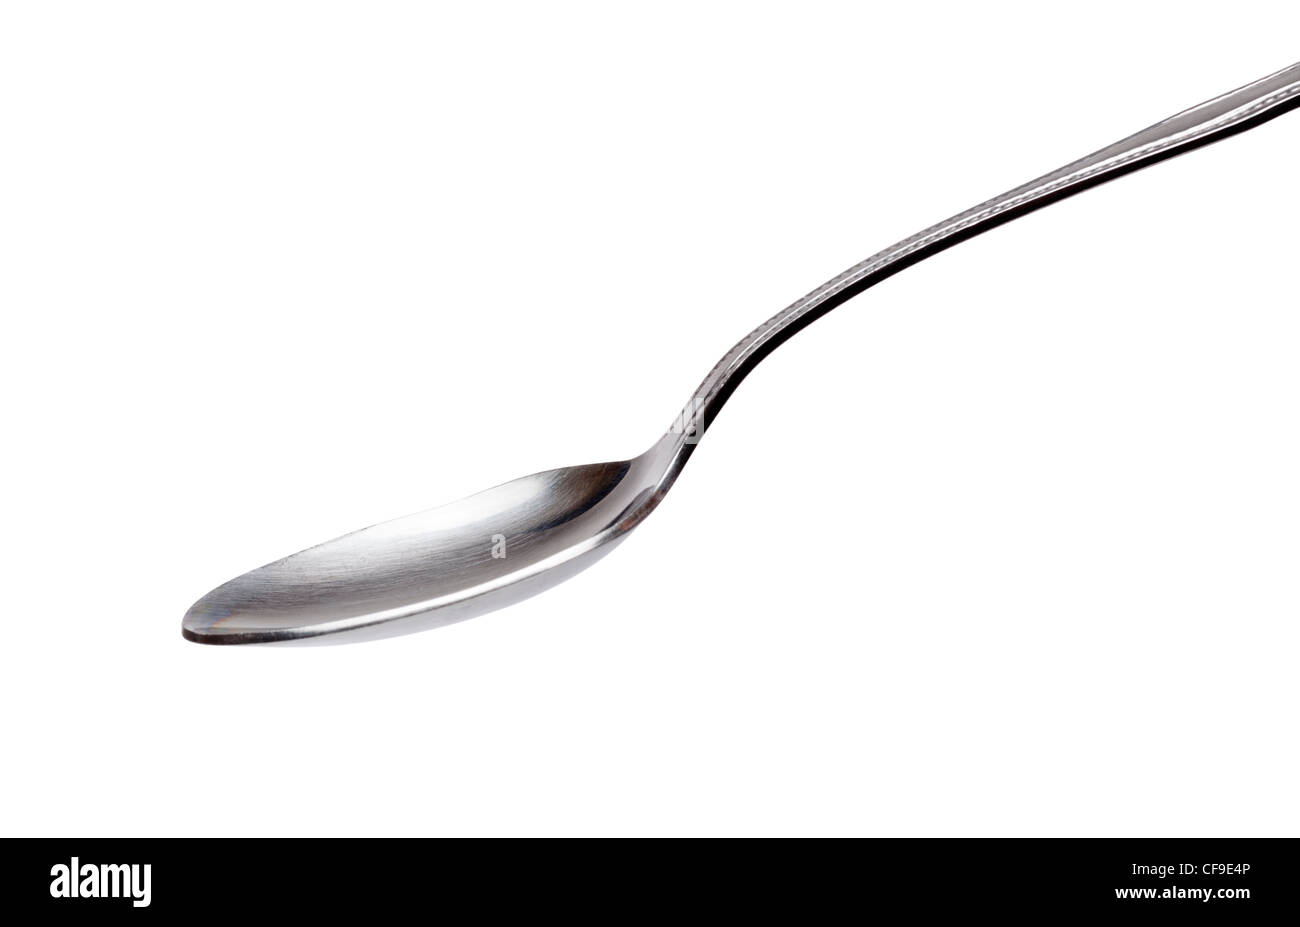 Empty spoon Stock Photo